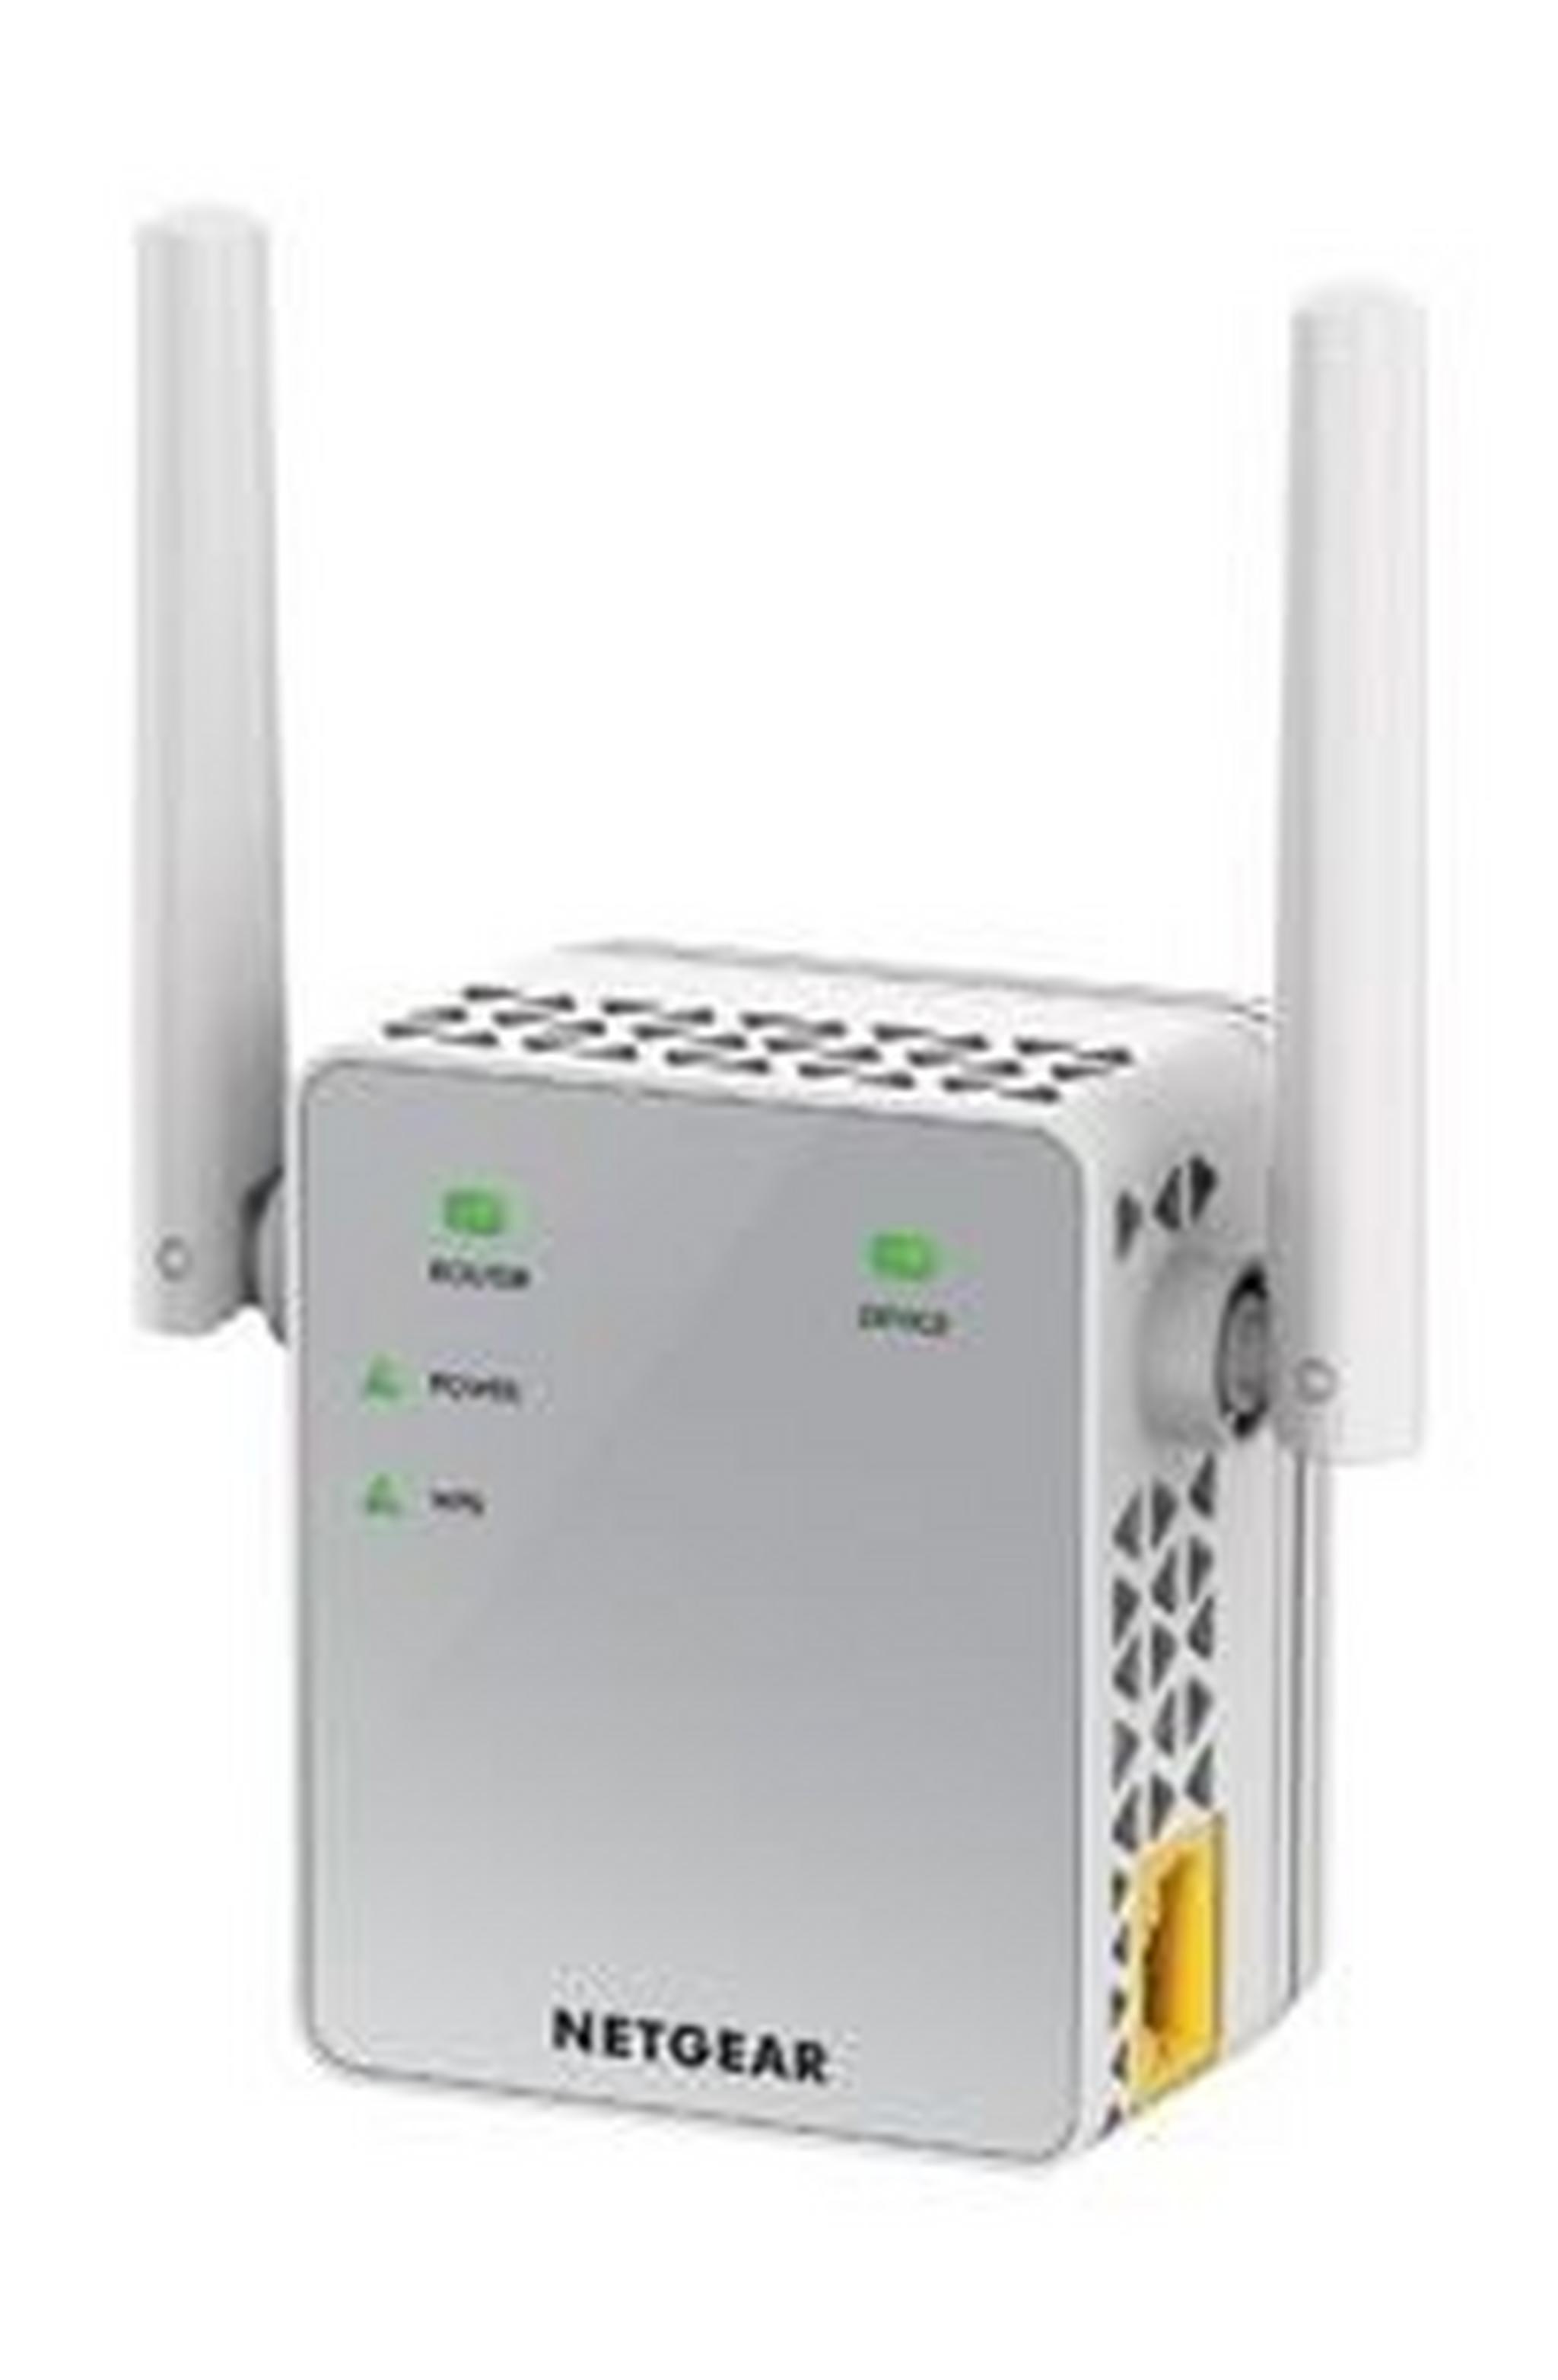 موسع نطاق شبكة الواي فاي AC750 من نت جير (EX3700)